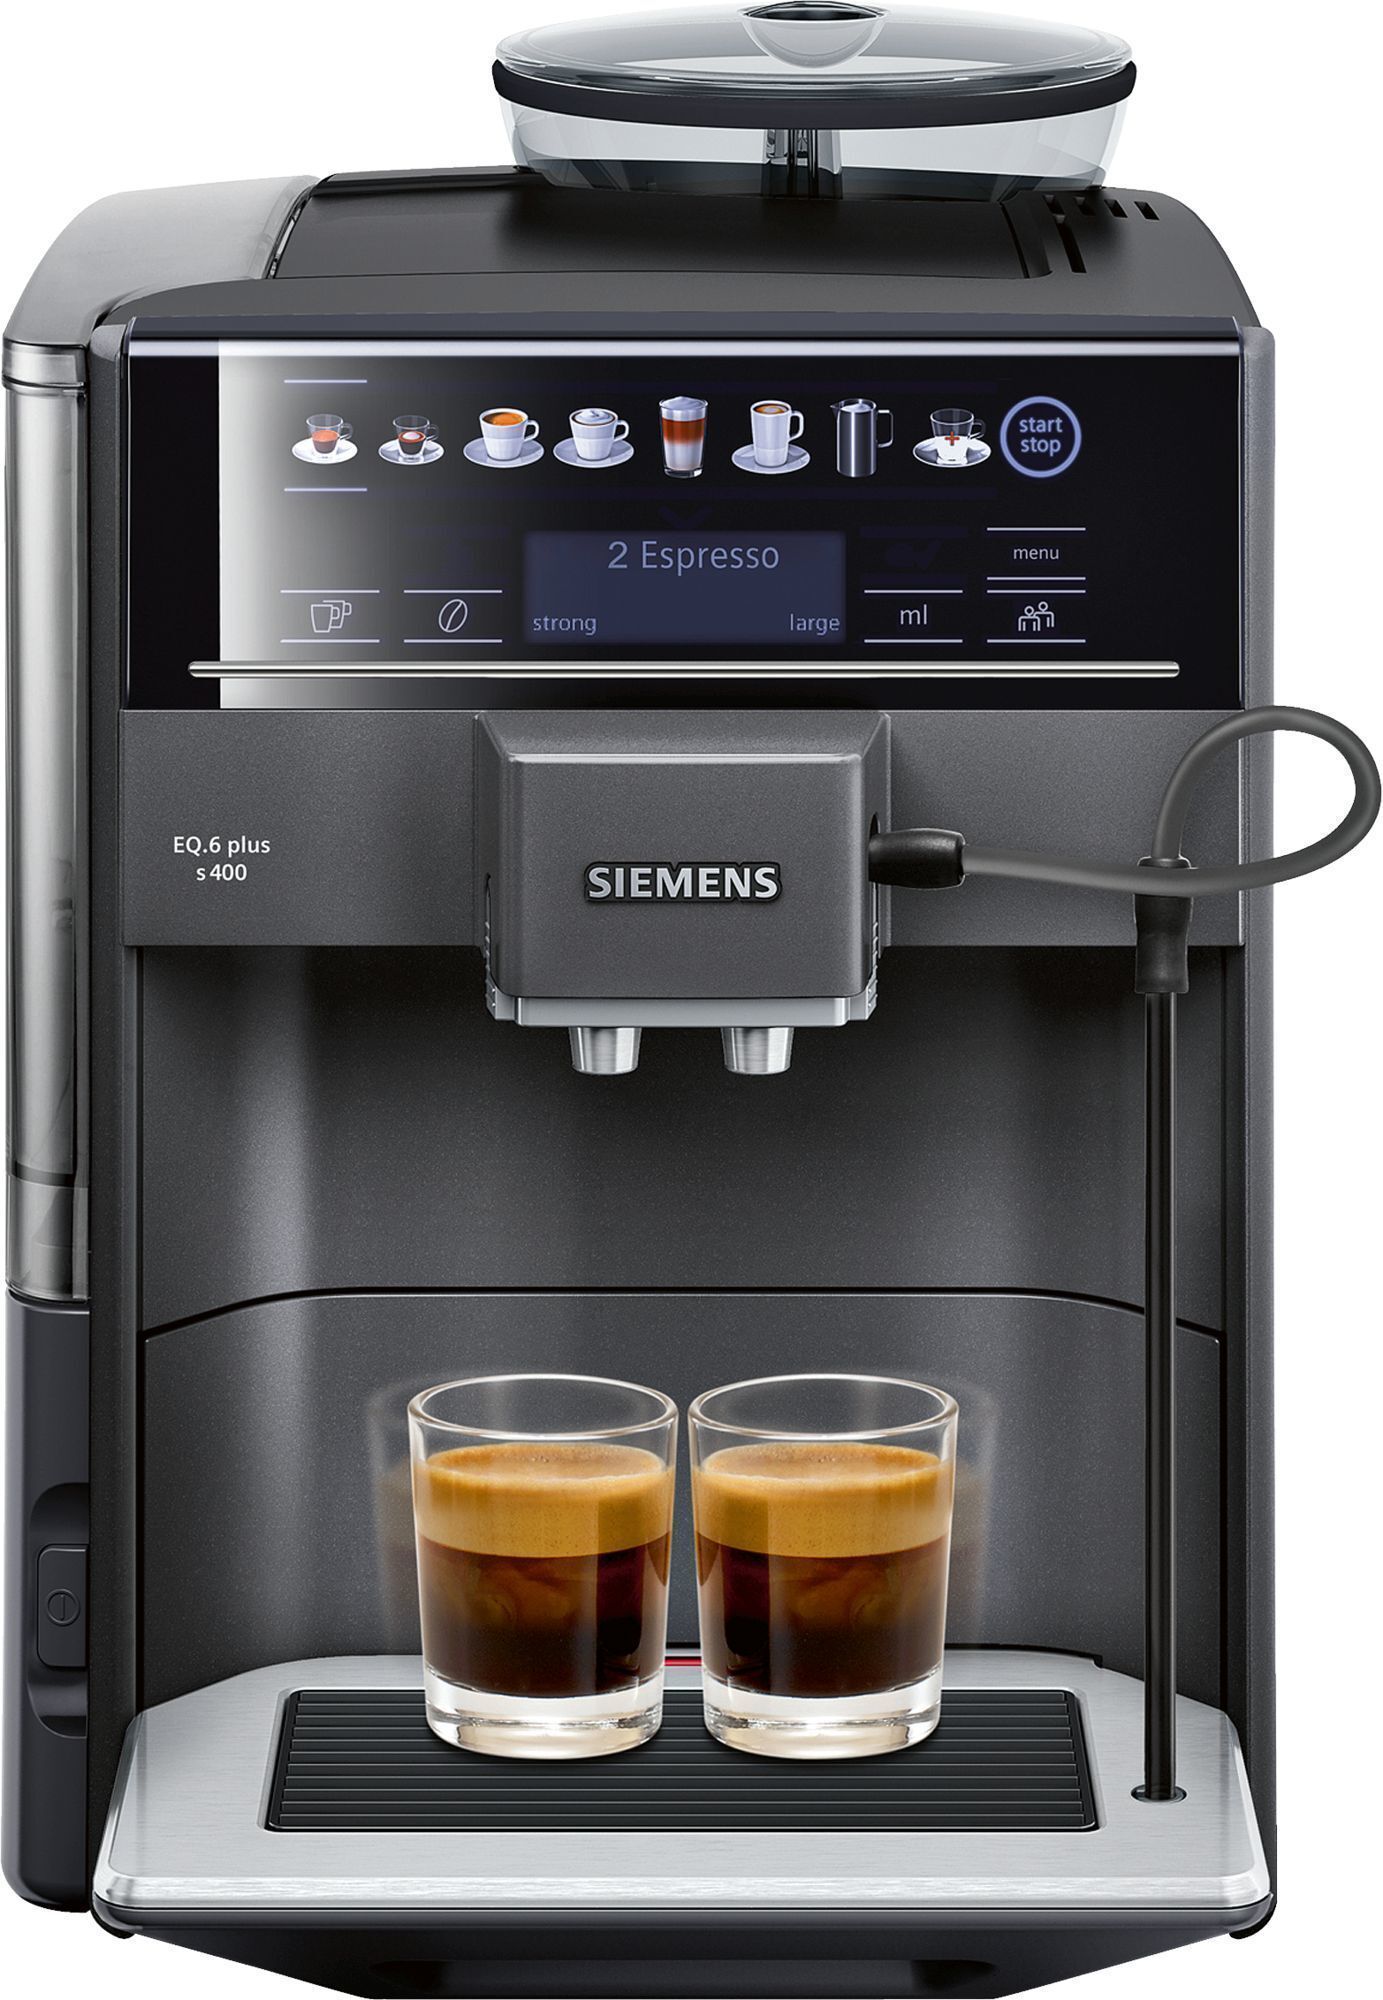 Siemens Espresso EQ.6 Plus s400 TE654319RW